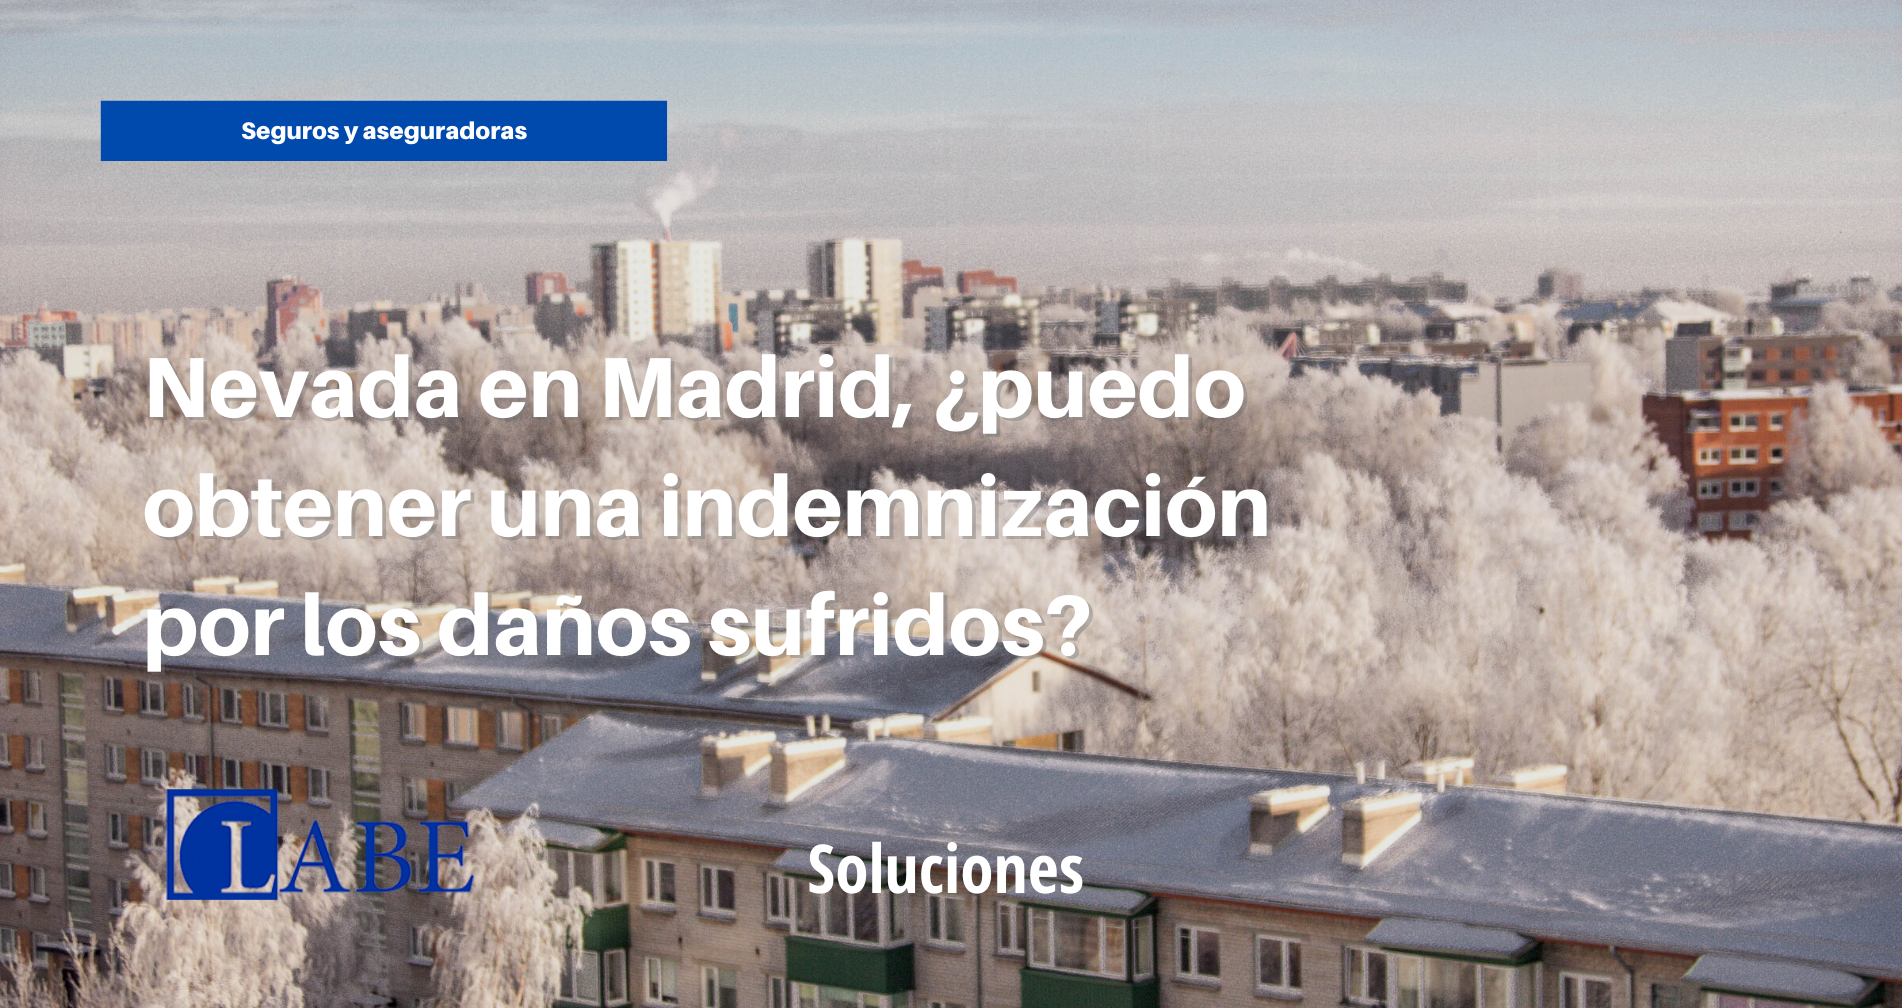 Nevada en Madrid, ¿puedo obtener una indemnización del seguro por los daños sufridos?